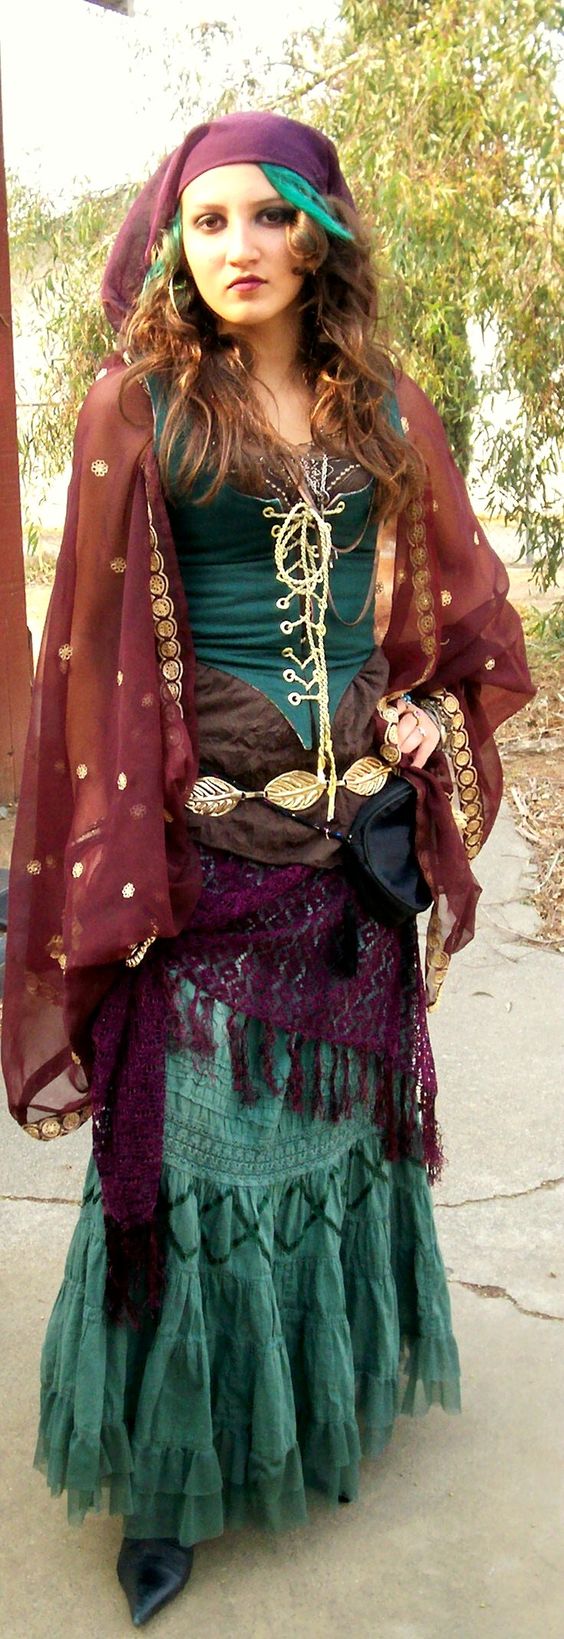 Gypsy Corset Halloween Costume